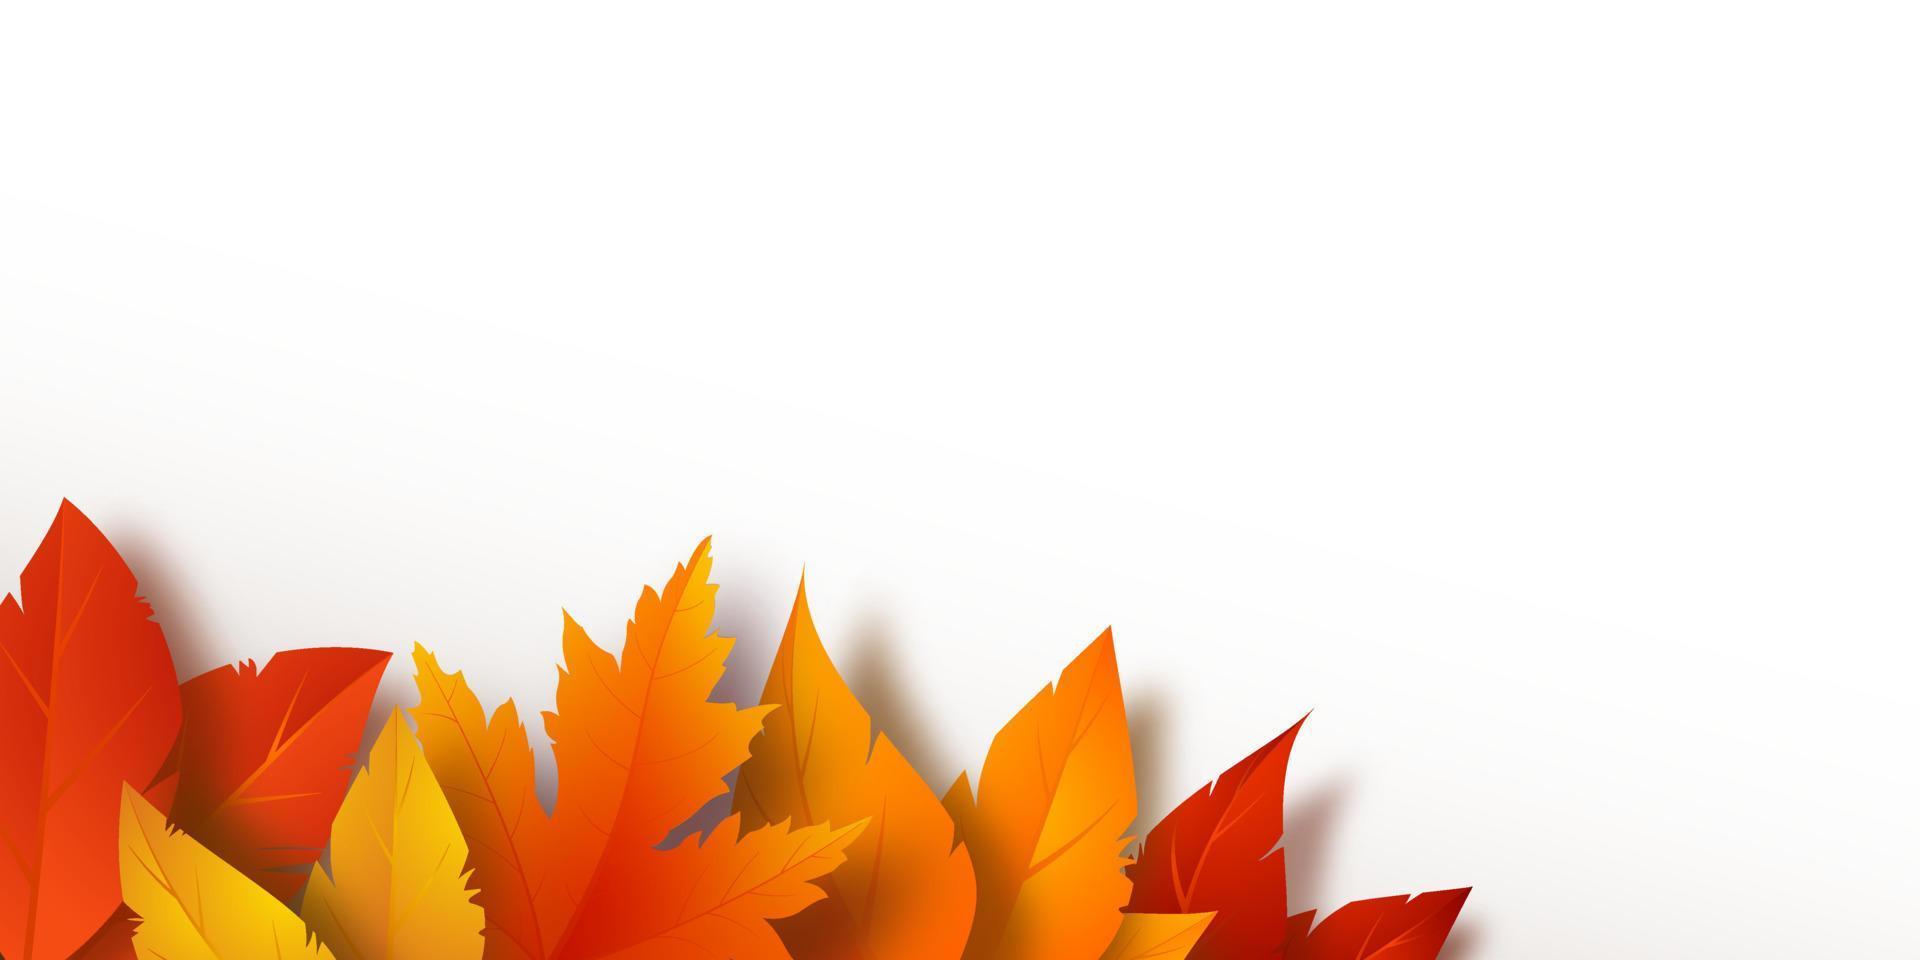 hojas amarillas, rojas y naranjas realistas. follaje de otoño sobre un fondo blanco. ilustración vectorial vector